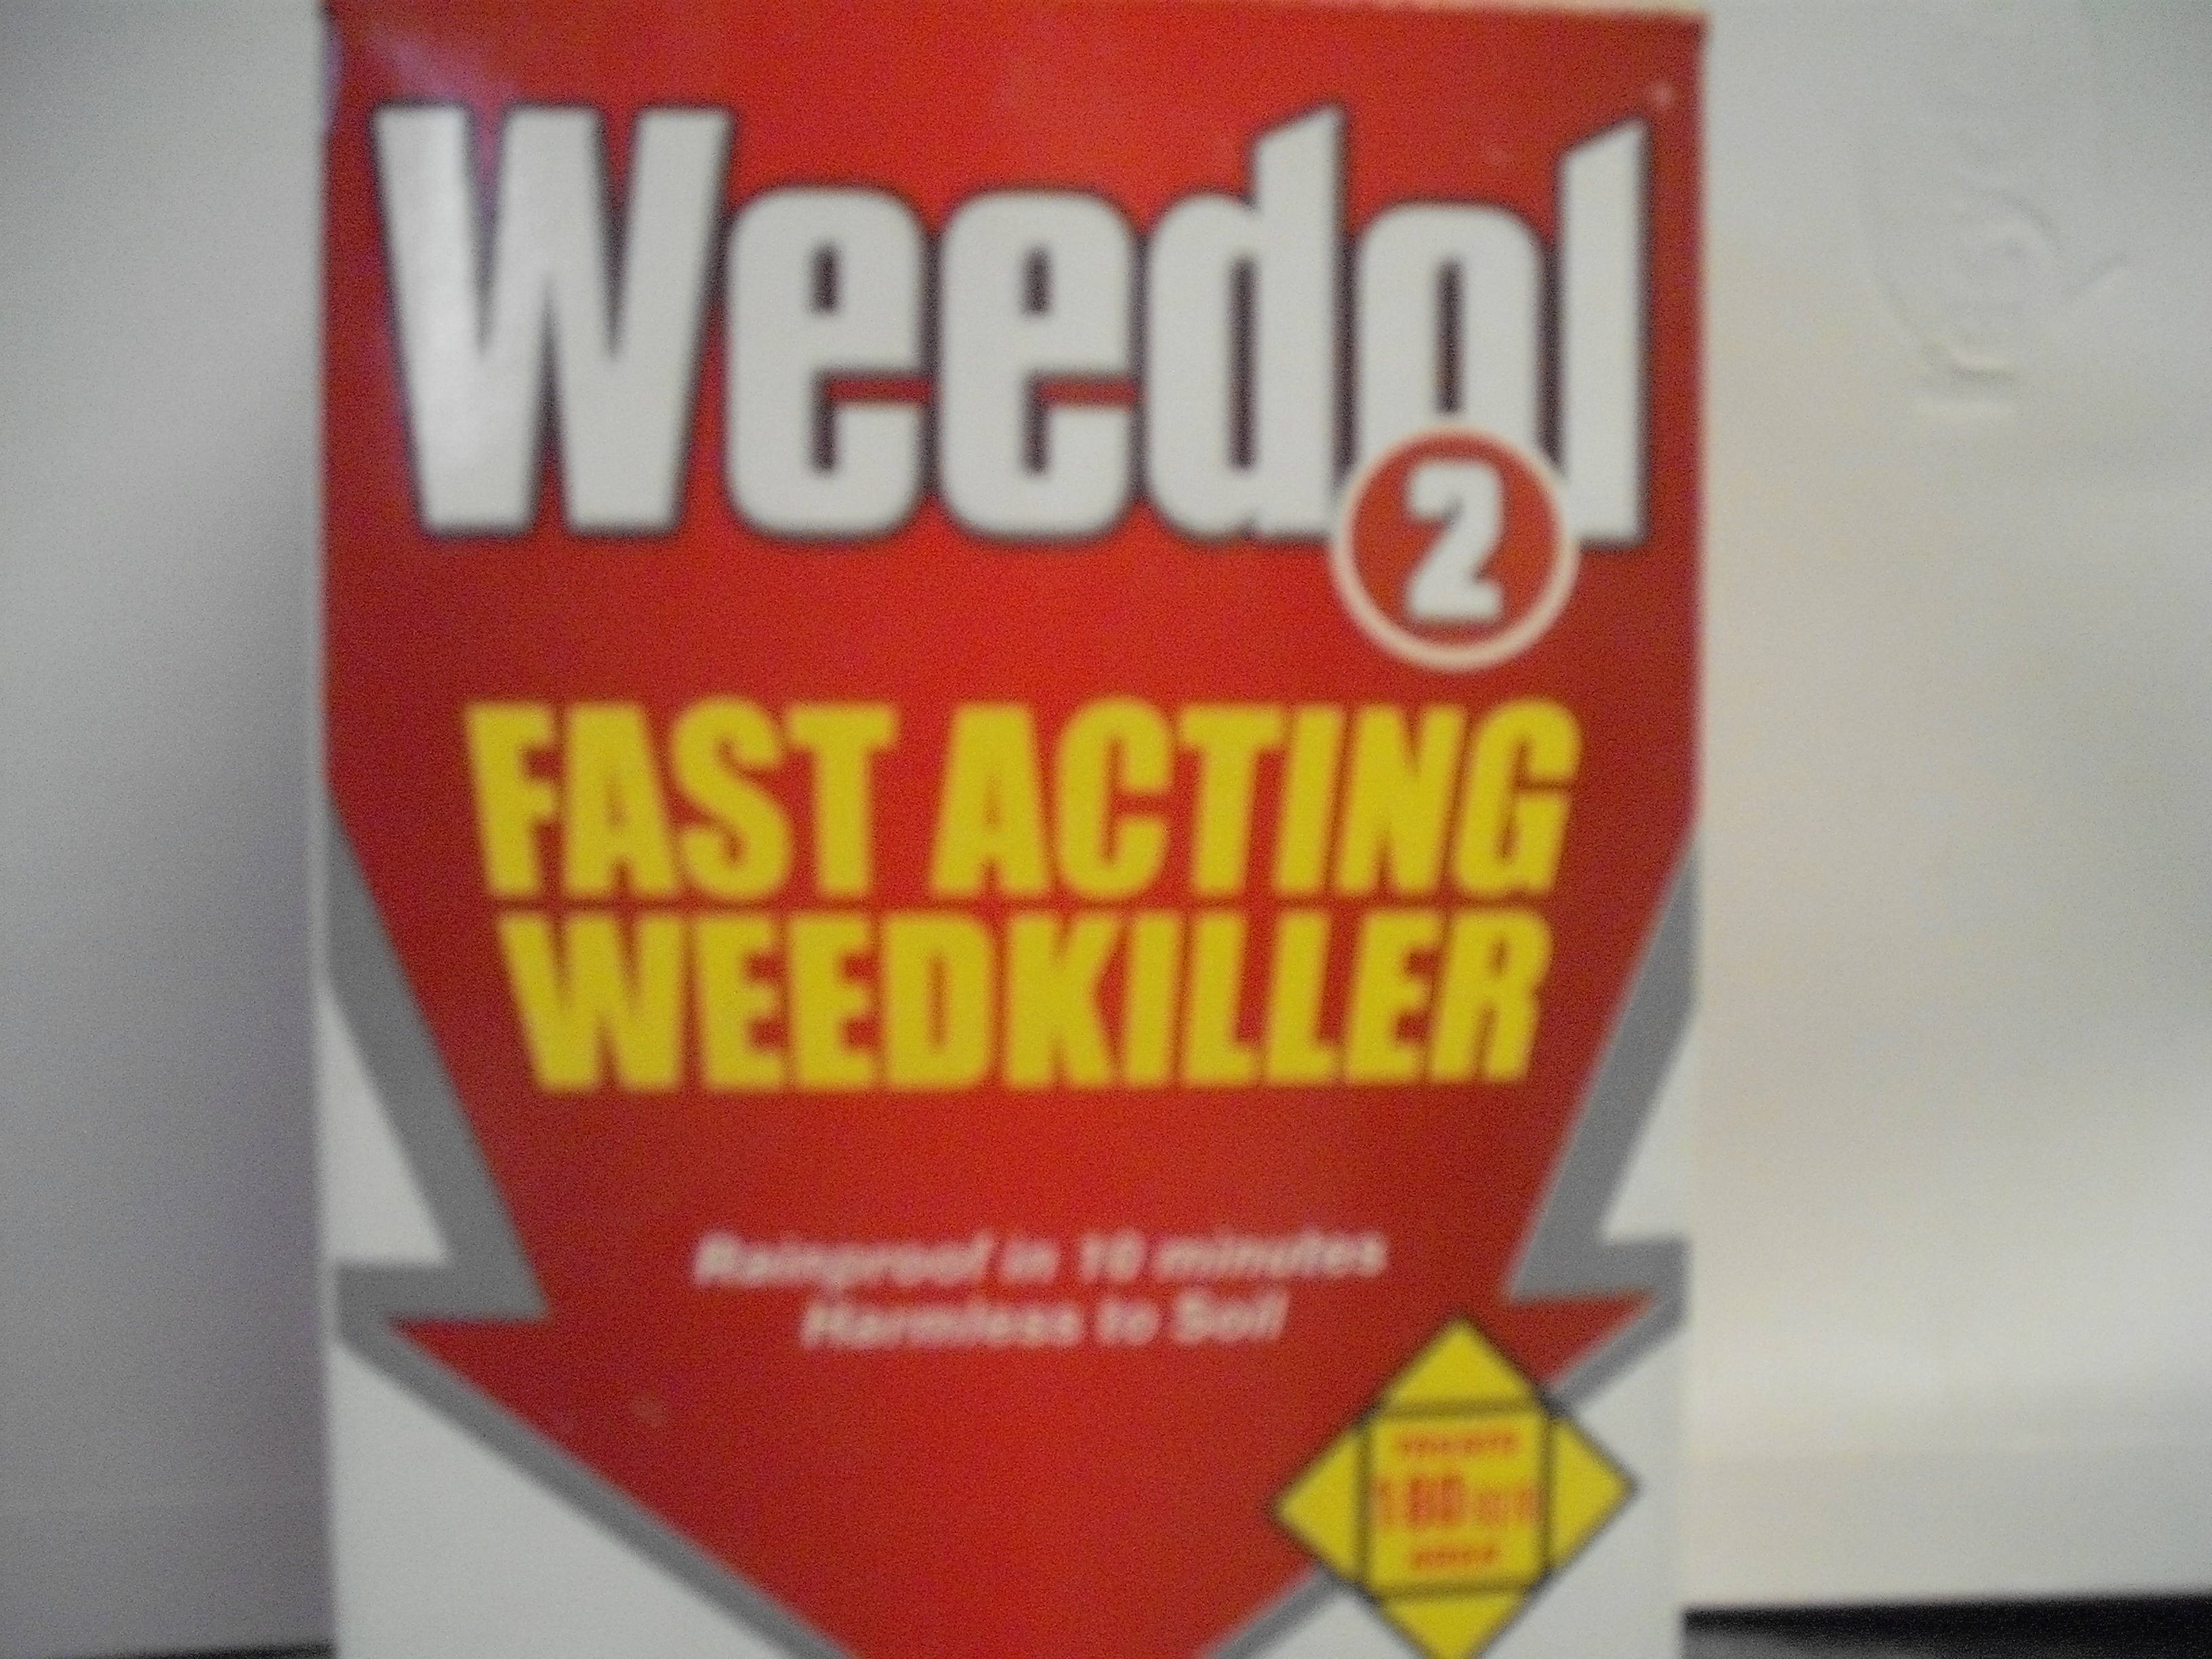 Weedol Weed Killer